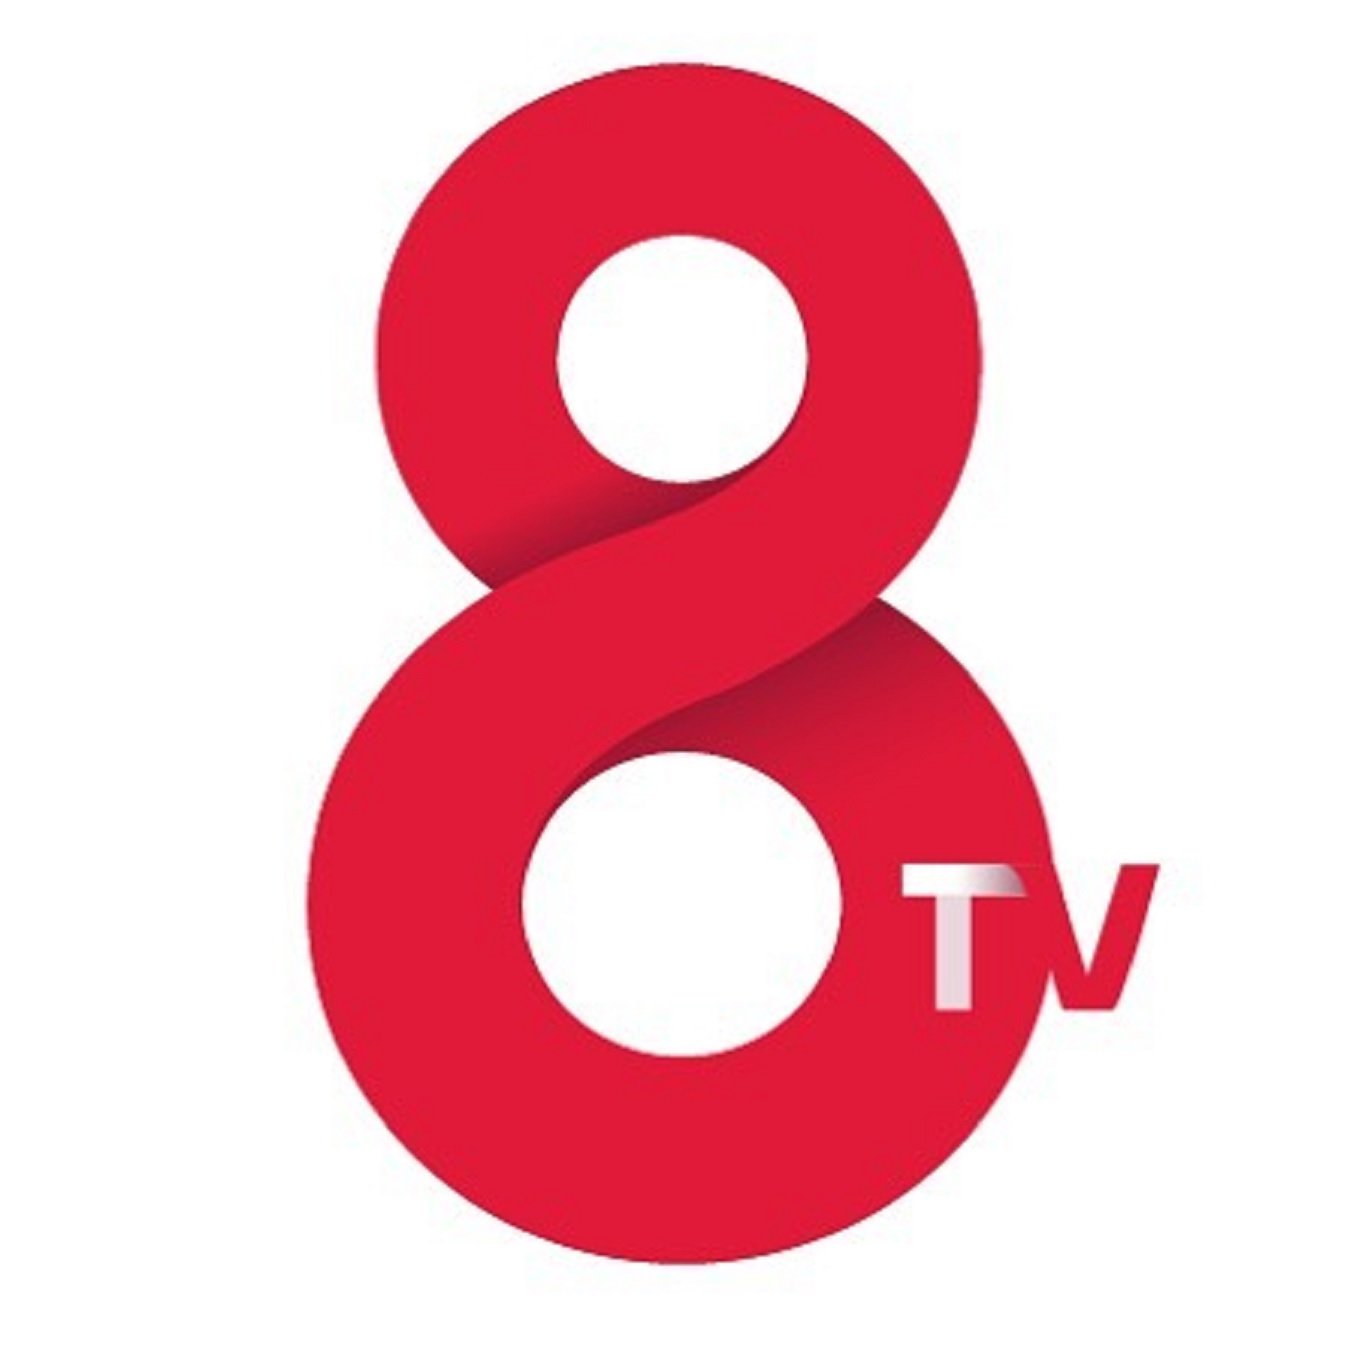 Famós VIP deixa 8TV i commou amb el seu comiat: "Fins sempre"